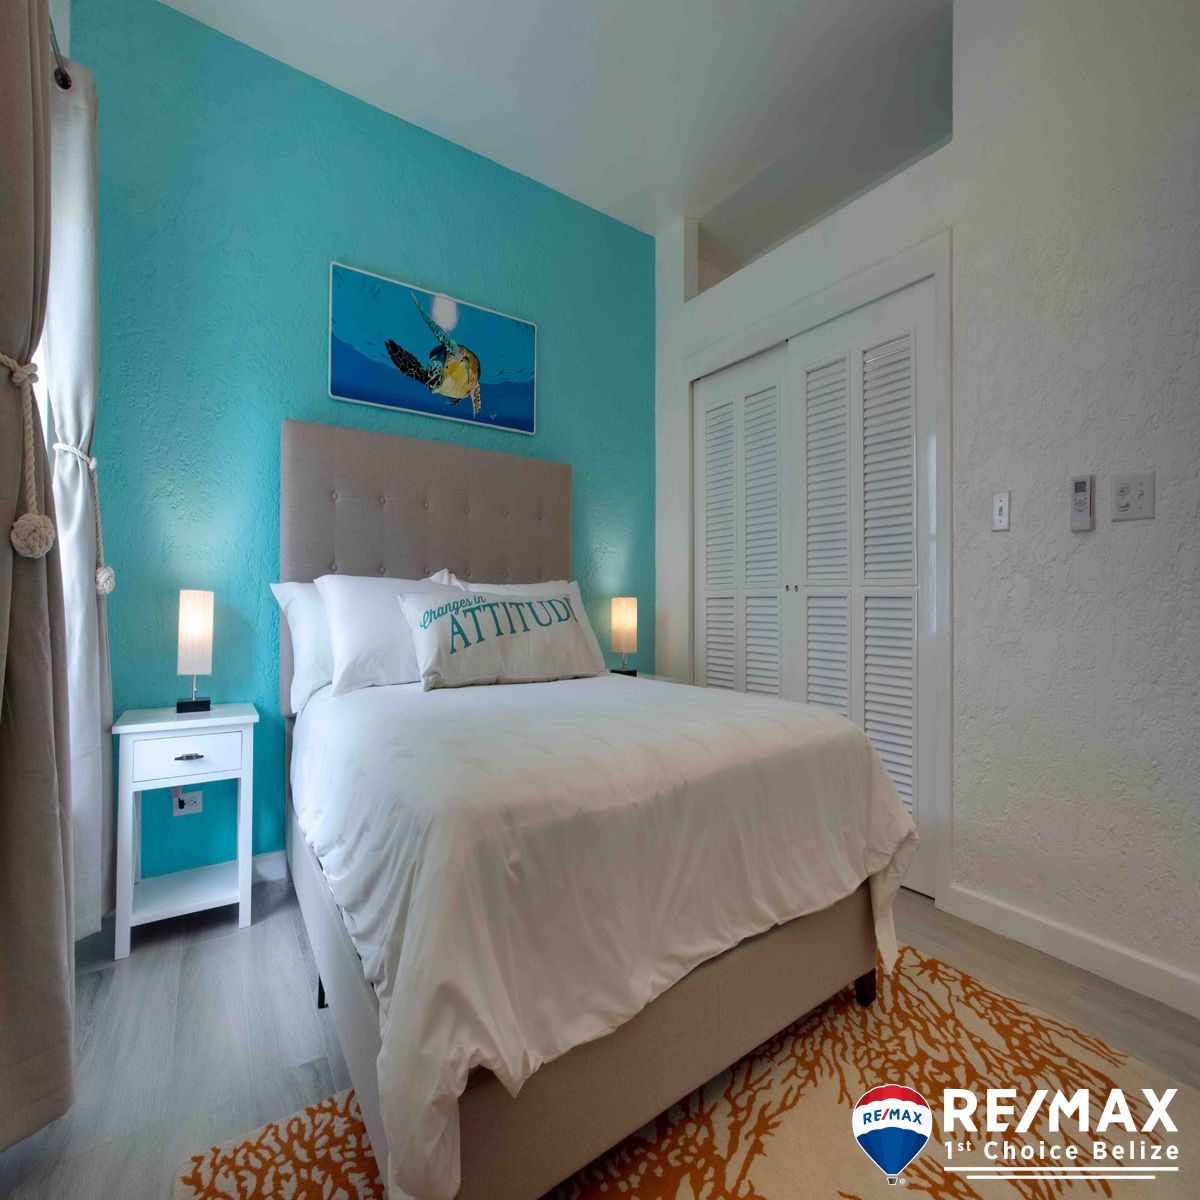 C1042 – 1 and 2 Bedroom Condo in Margaritaville Resort Belize